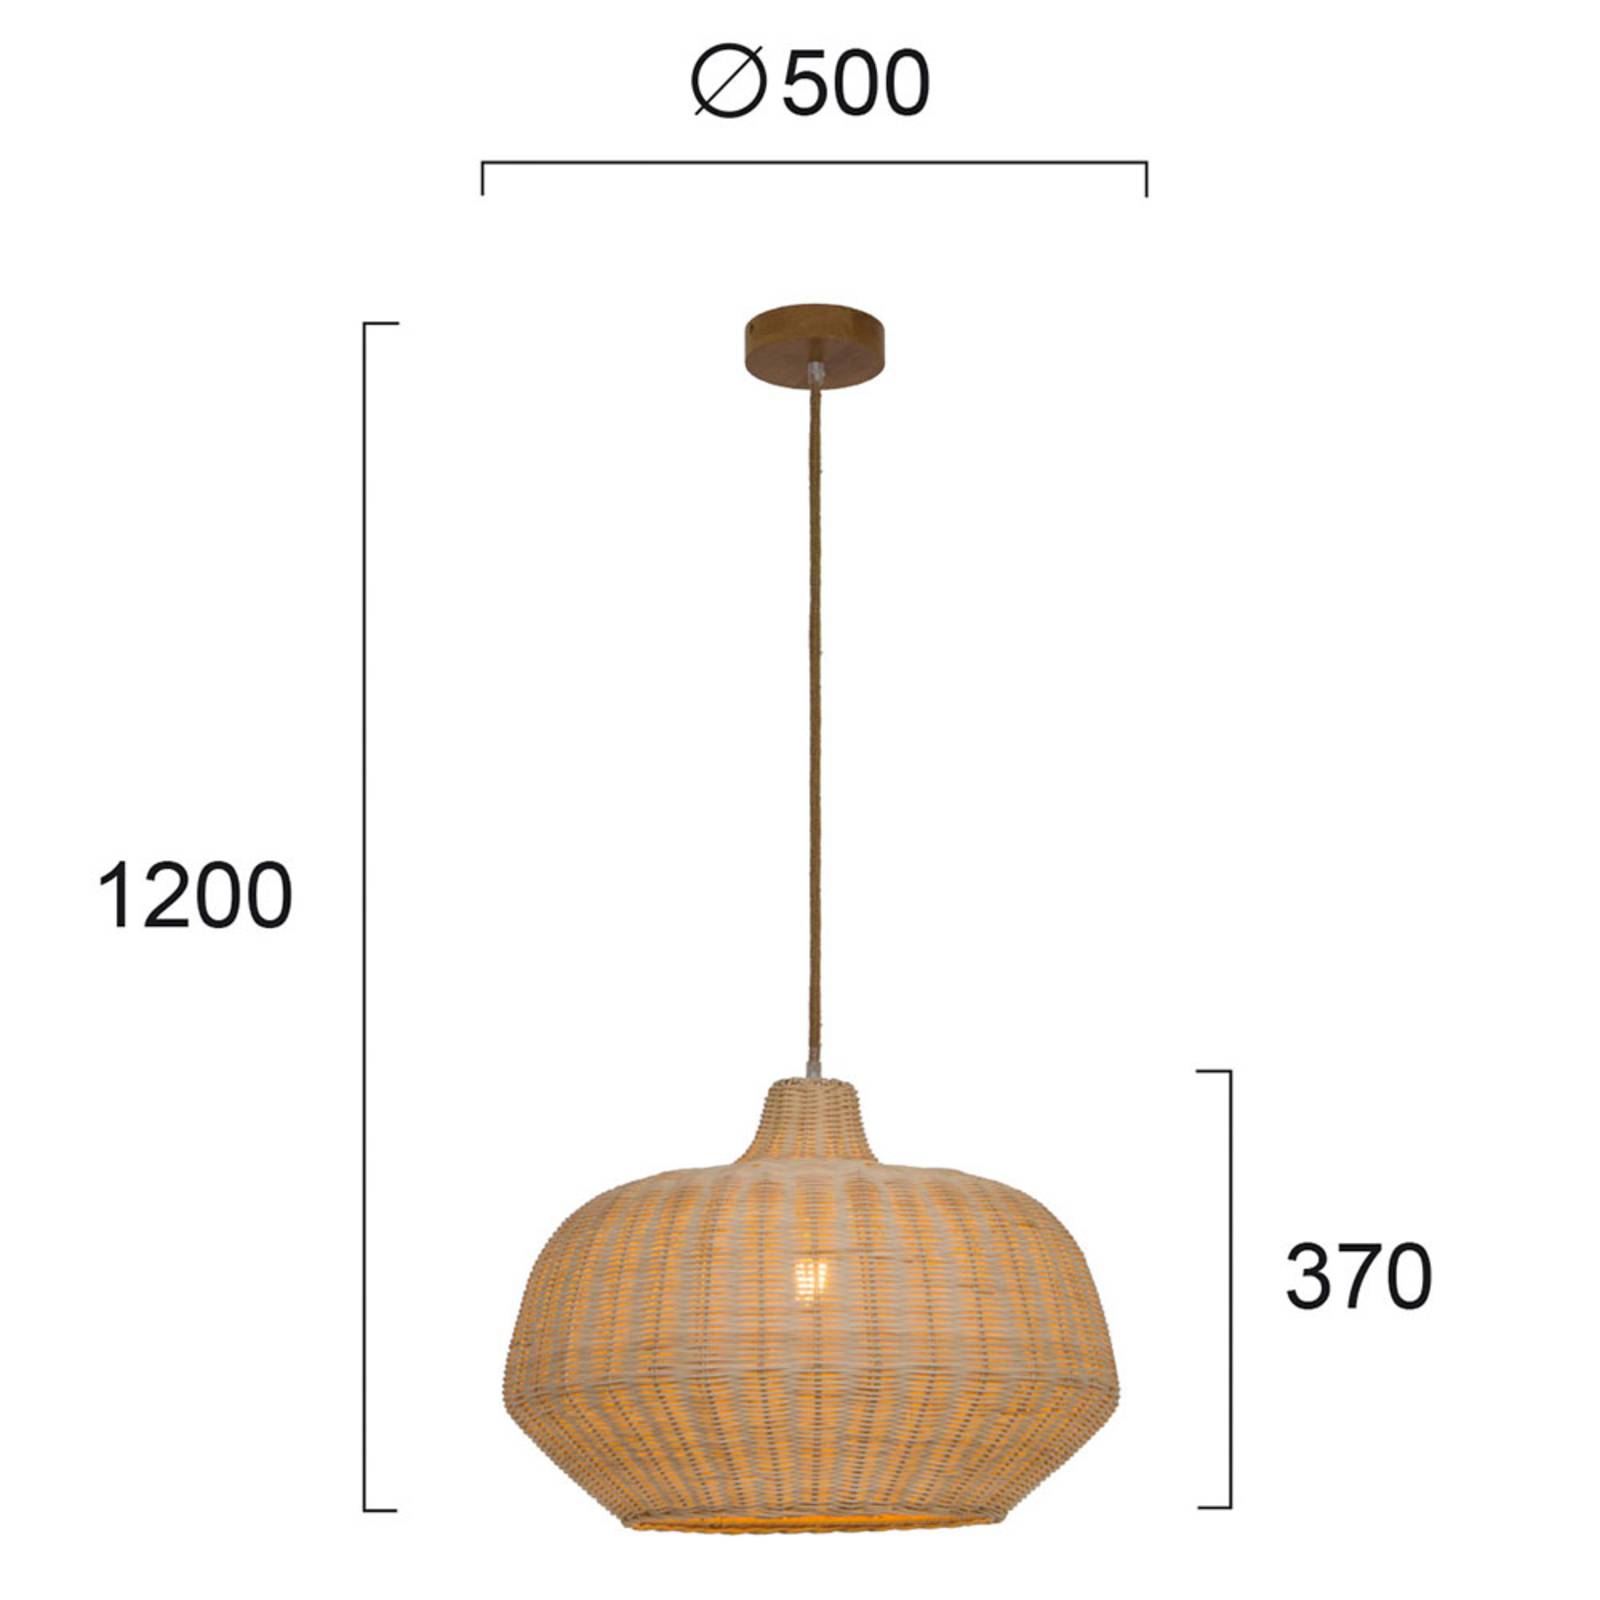 Hanglamp Malibu van rotan, hoogte 37 cm, beige